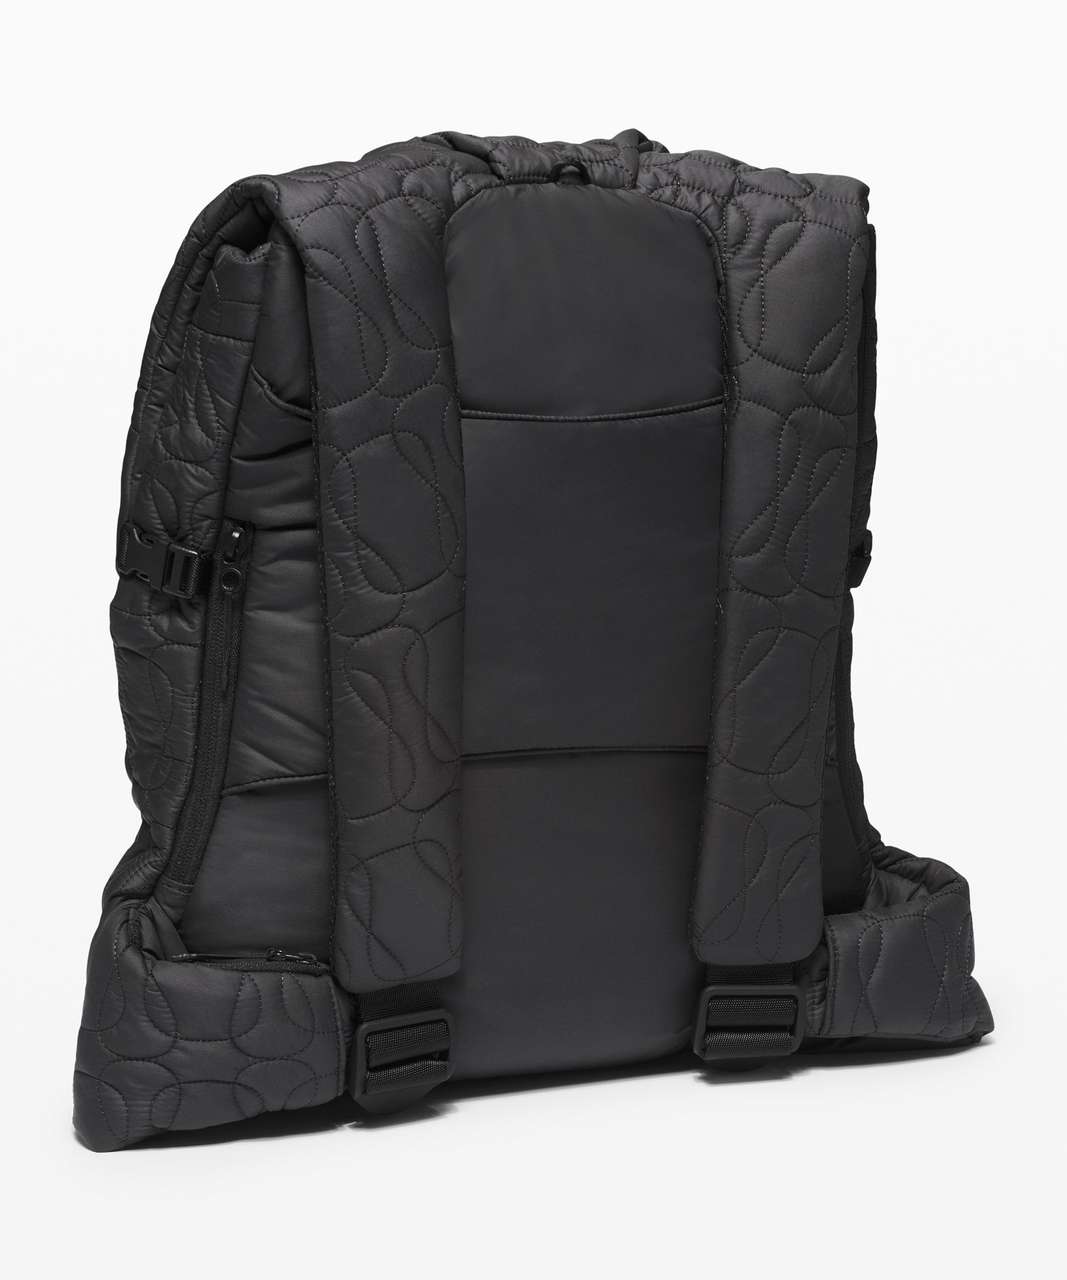 Lululemon Quilted Embrace Backpack 13L - Black